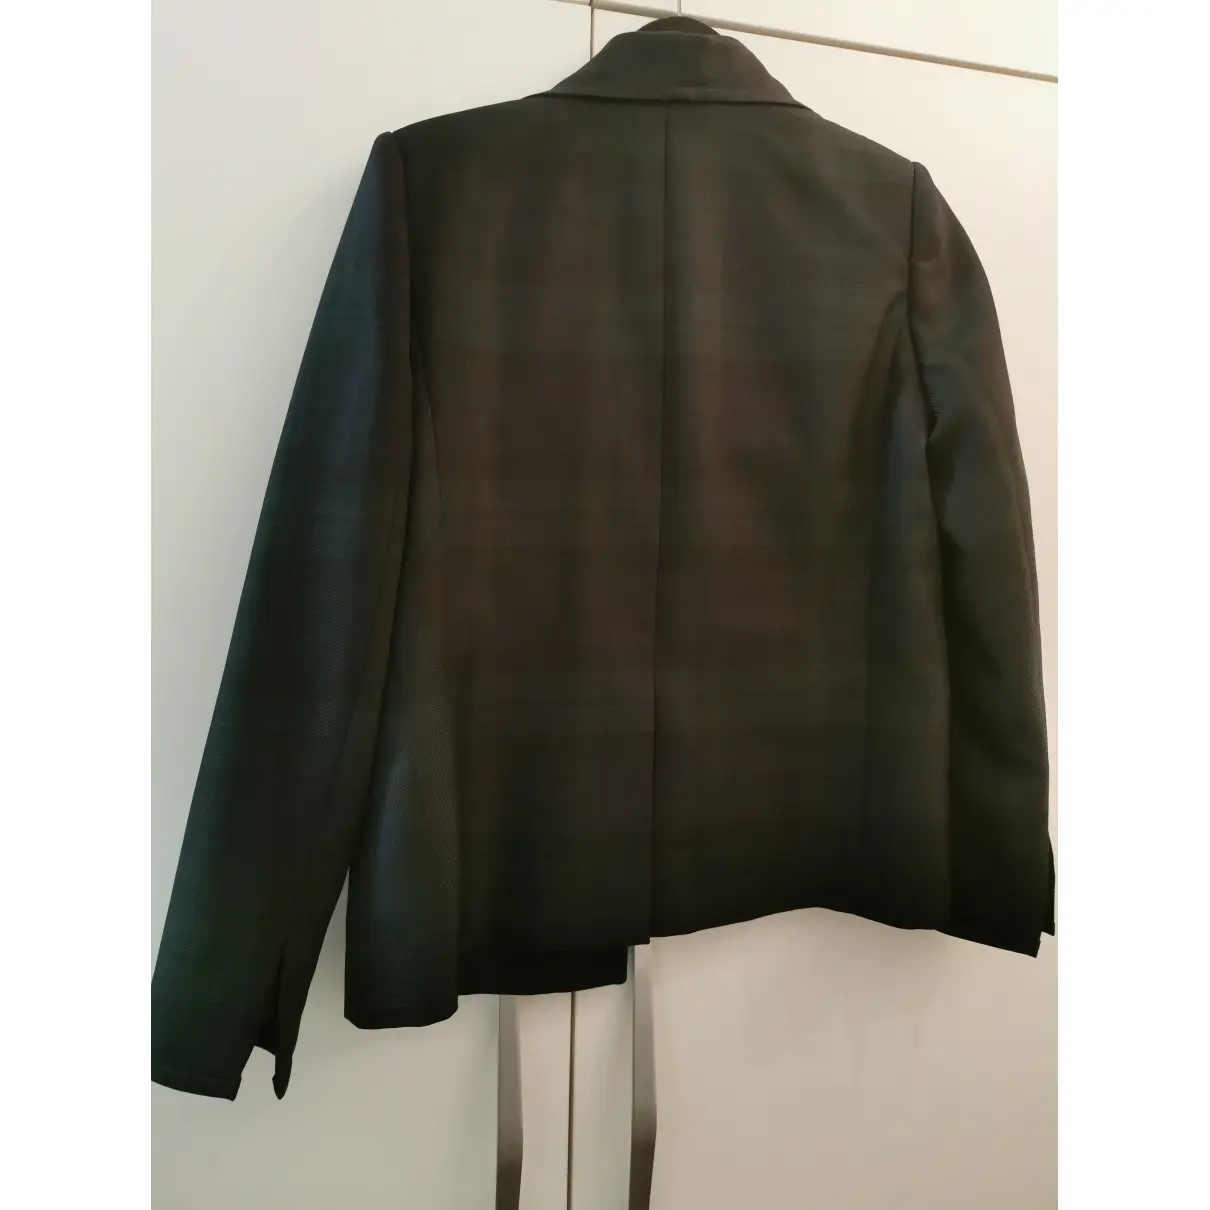 Buy Alyx Suit jacket online